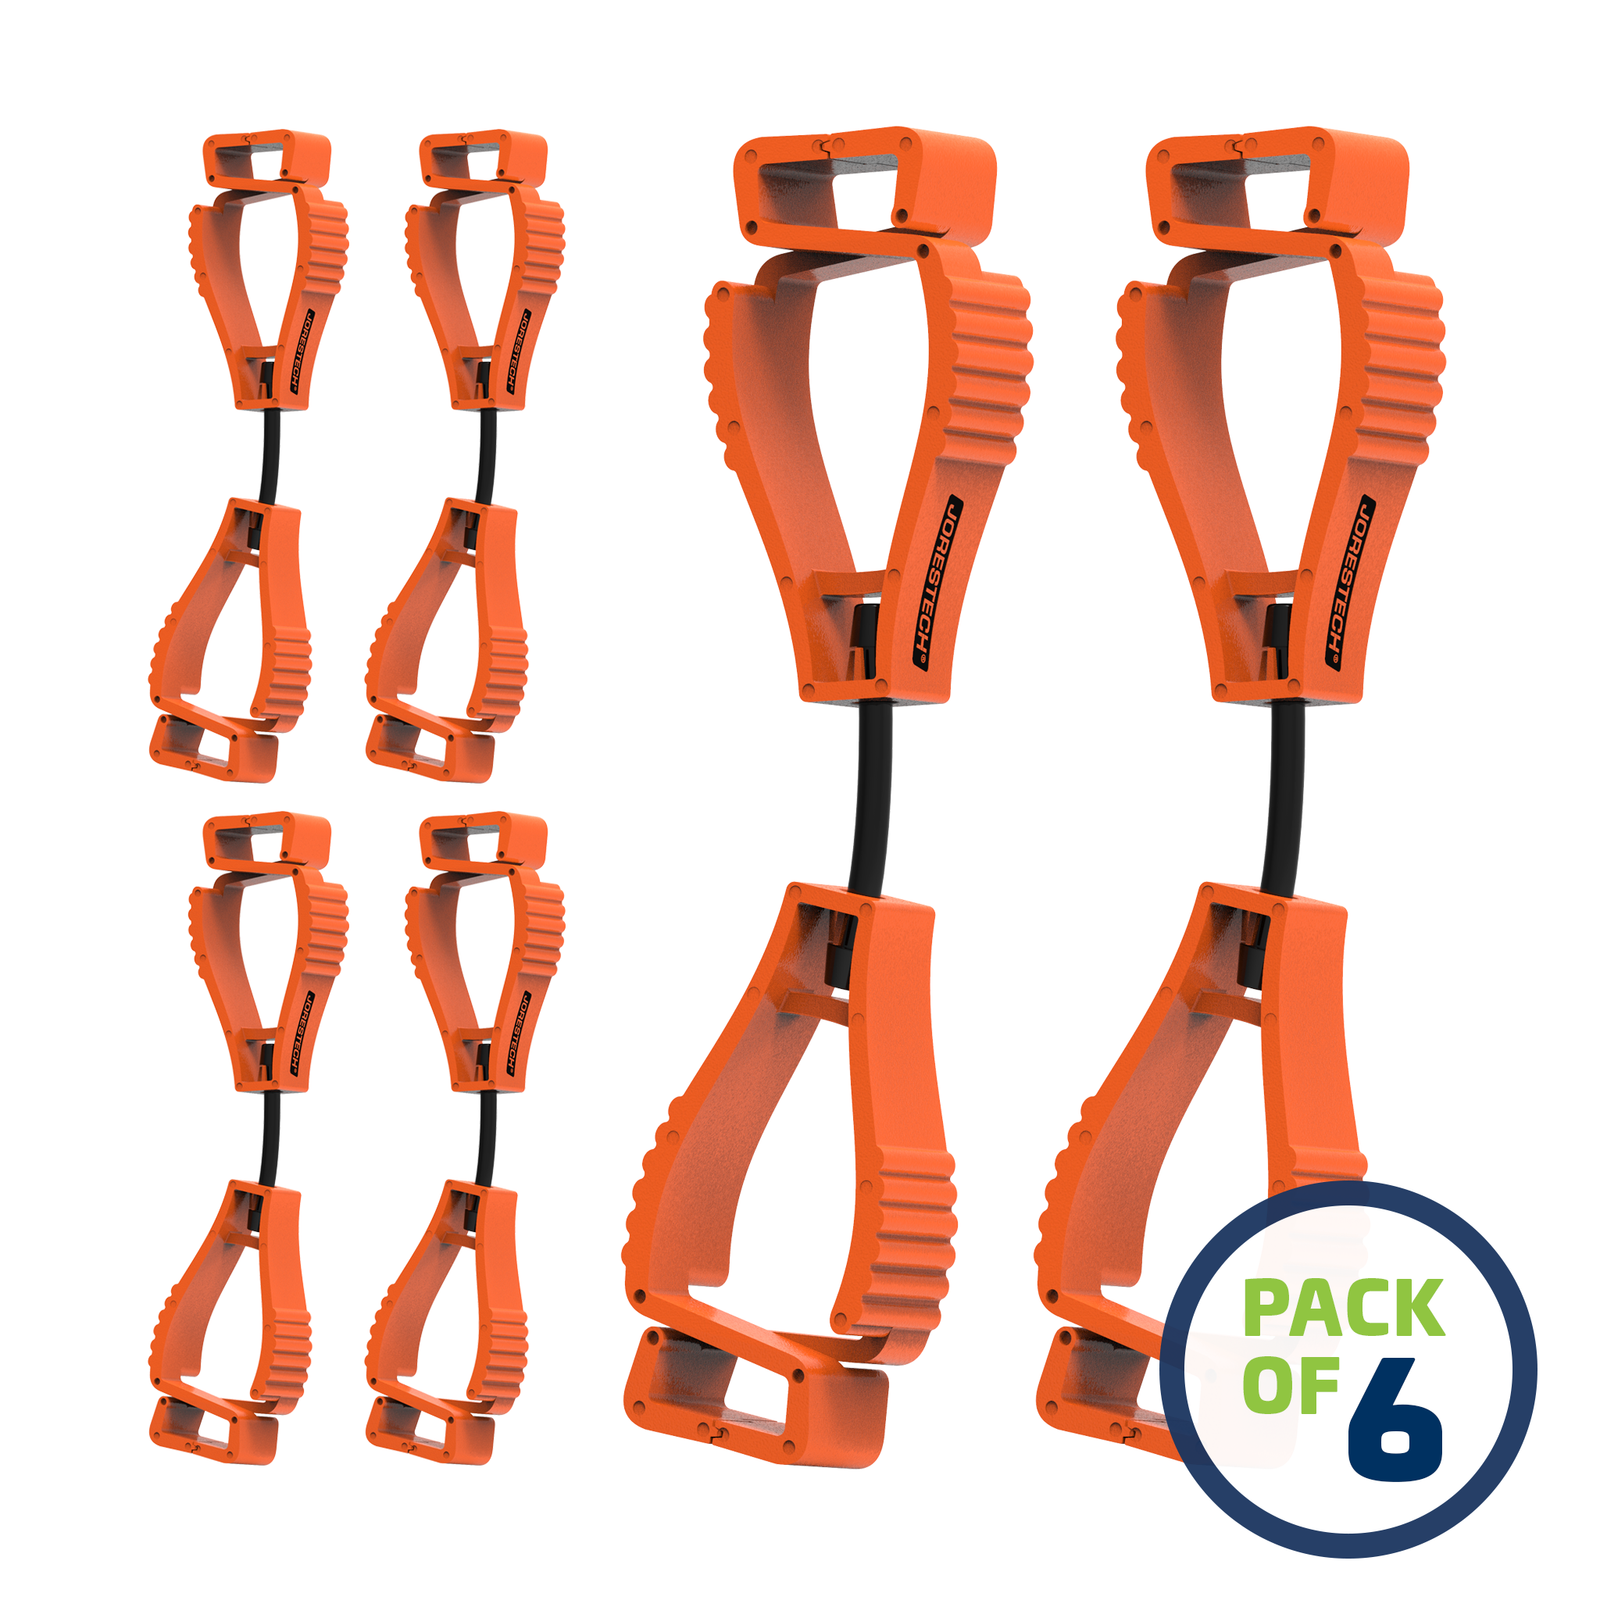 6 Orange glove clip safety holder